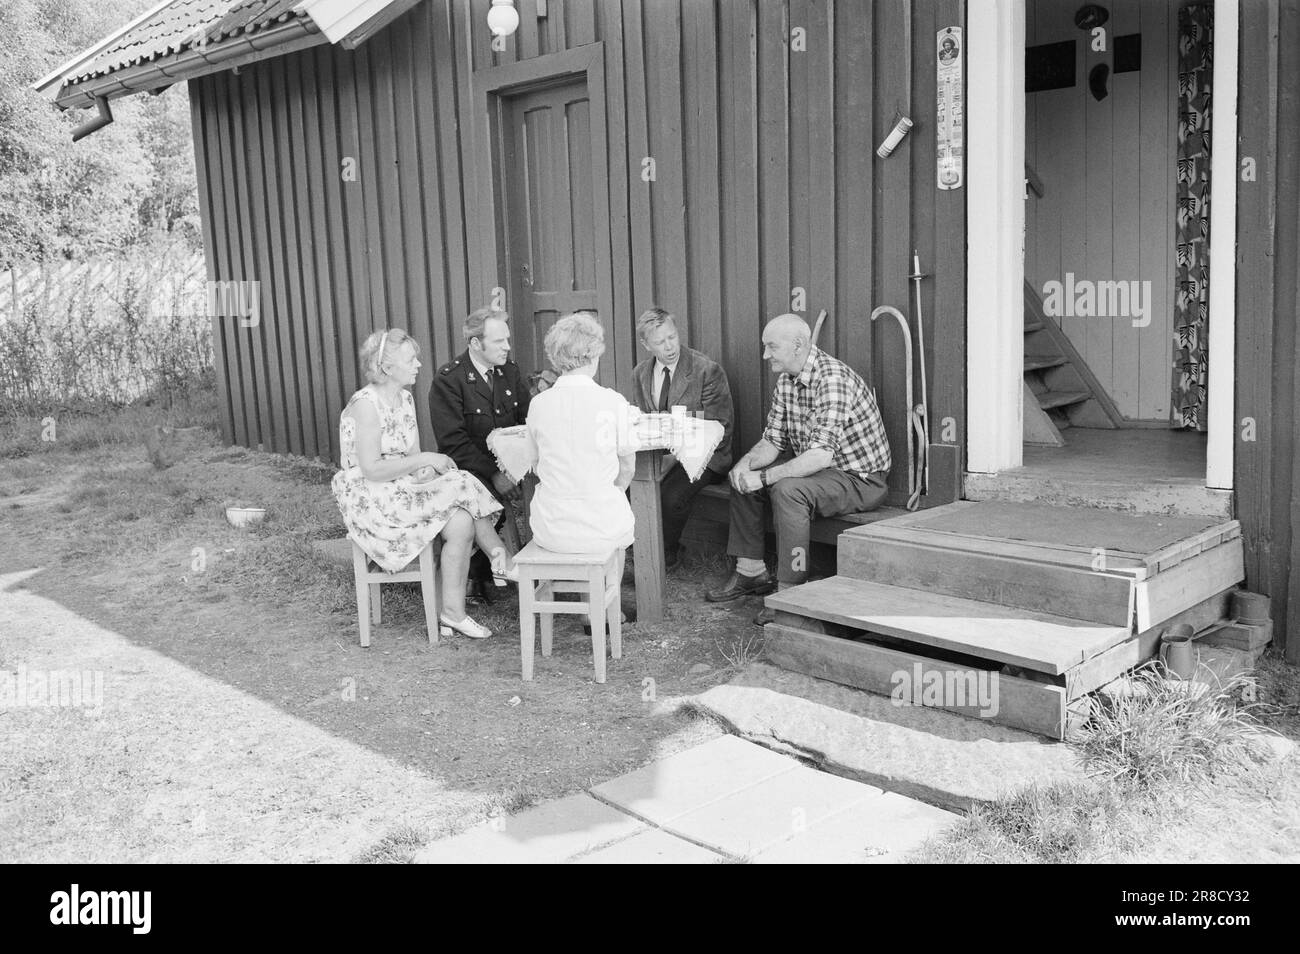 Attuale 22 - 2 - 1974: DUS con il PoliceLa polizia distrettuale è uno strano fenomeno che agisce come una sorta di zona cuscinetto tra il poliziotto ordinario e il ragazzo in strada. Lo scopo principale è quello di prevenire la criminalità. La corrente è con gli ufficiali Helge Løhren e Lars Stubstad. Visita di Maria e Reidar Ødegården a Østmarka. Entrambi sono stati attivamente coinvolti nel lavoro con i giovani del distretto. Foto: Ivar Aaserud / Aktuell / NTB ***FOTO NON ELABORATA*** Foto Stock